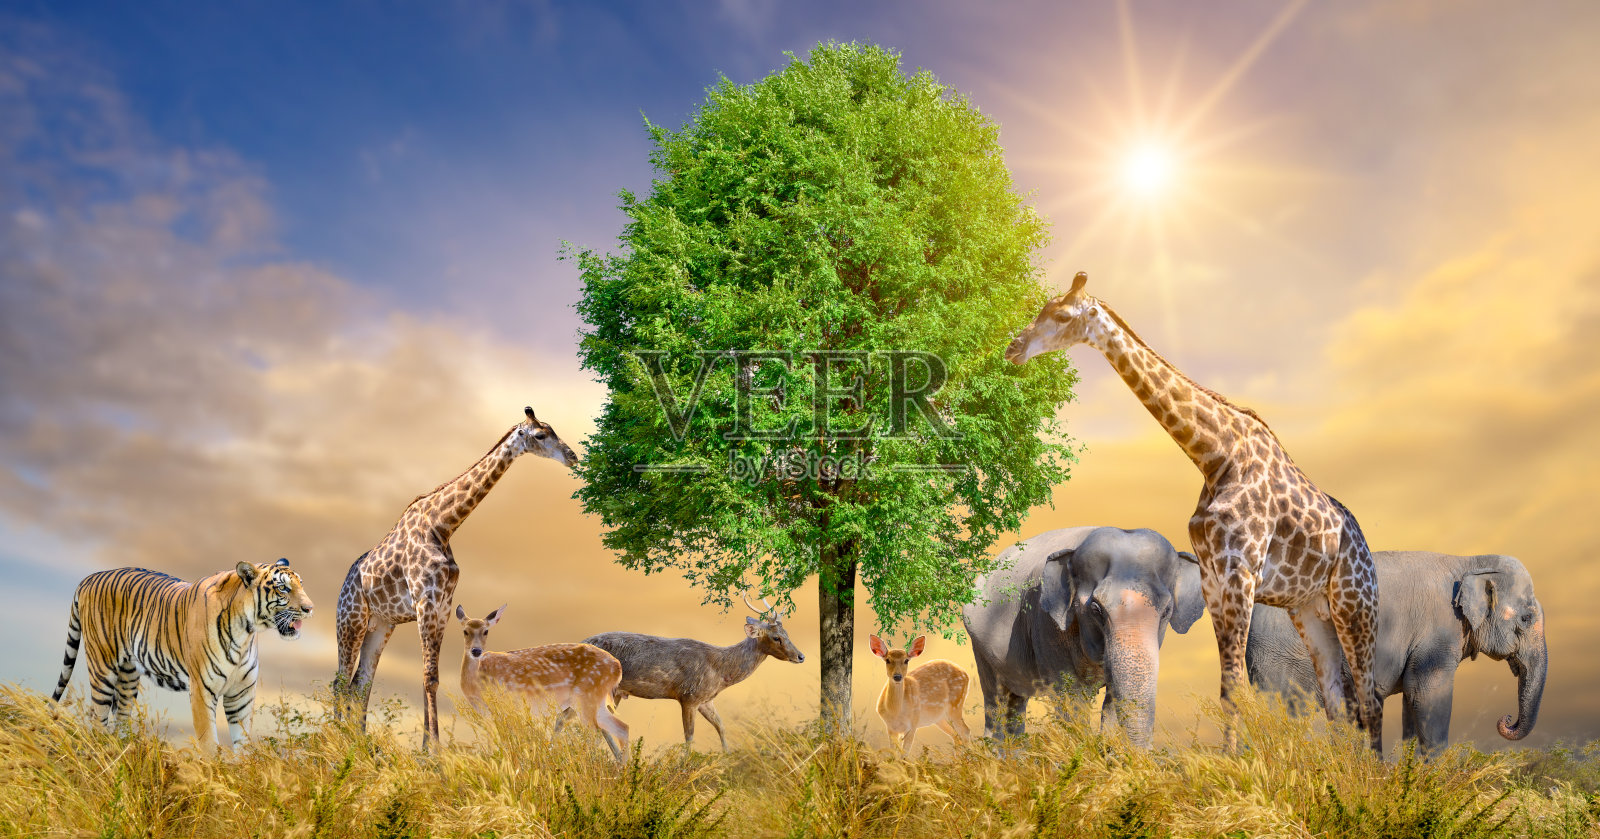 大批非洲野生动物。野生动物保护的概念照片摄影图片